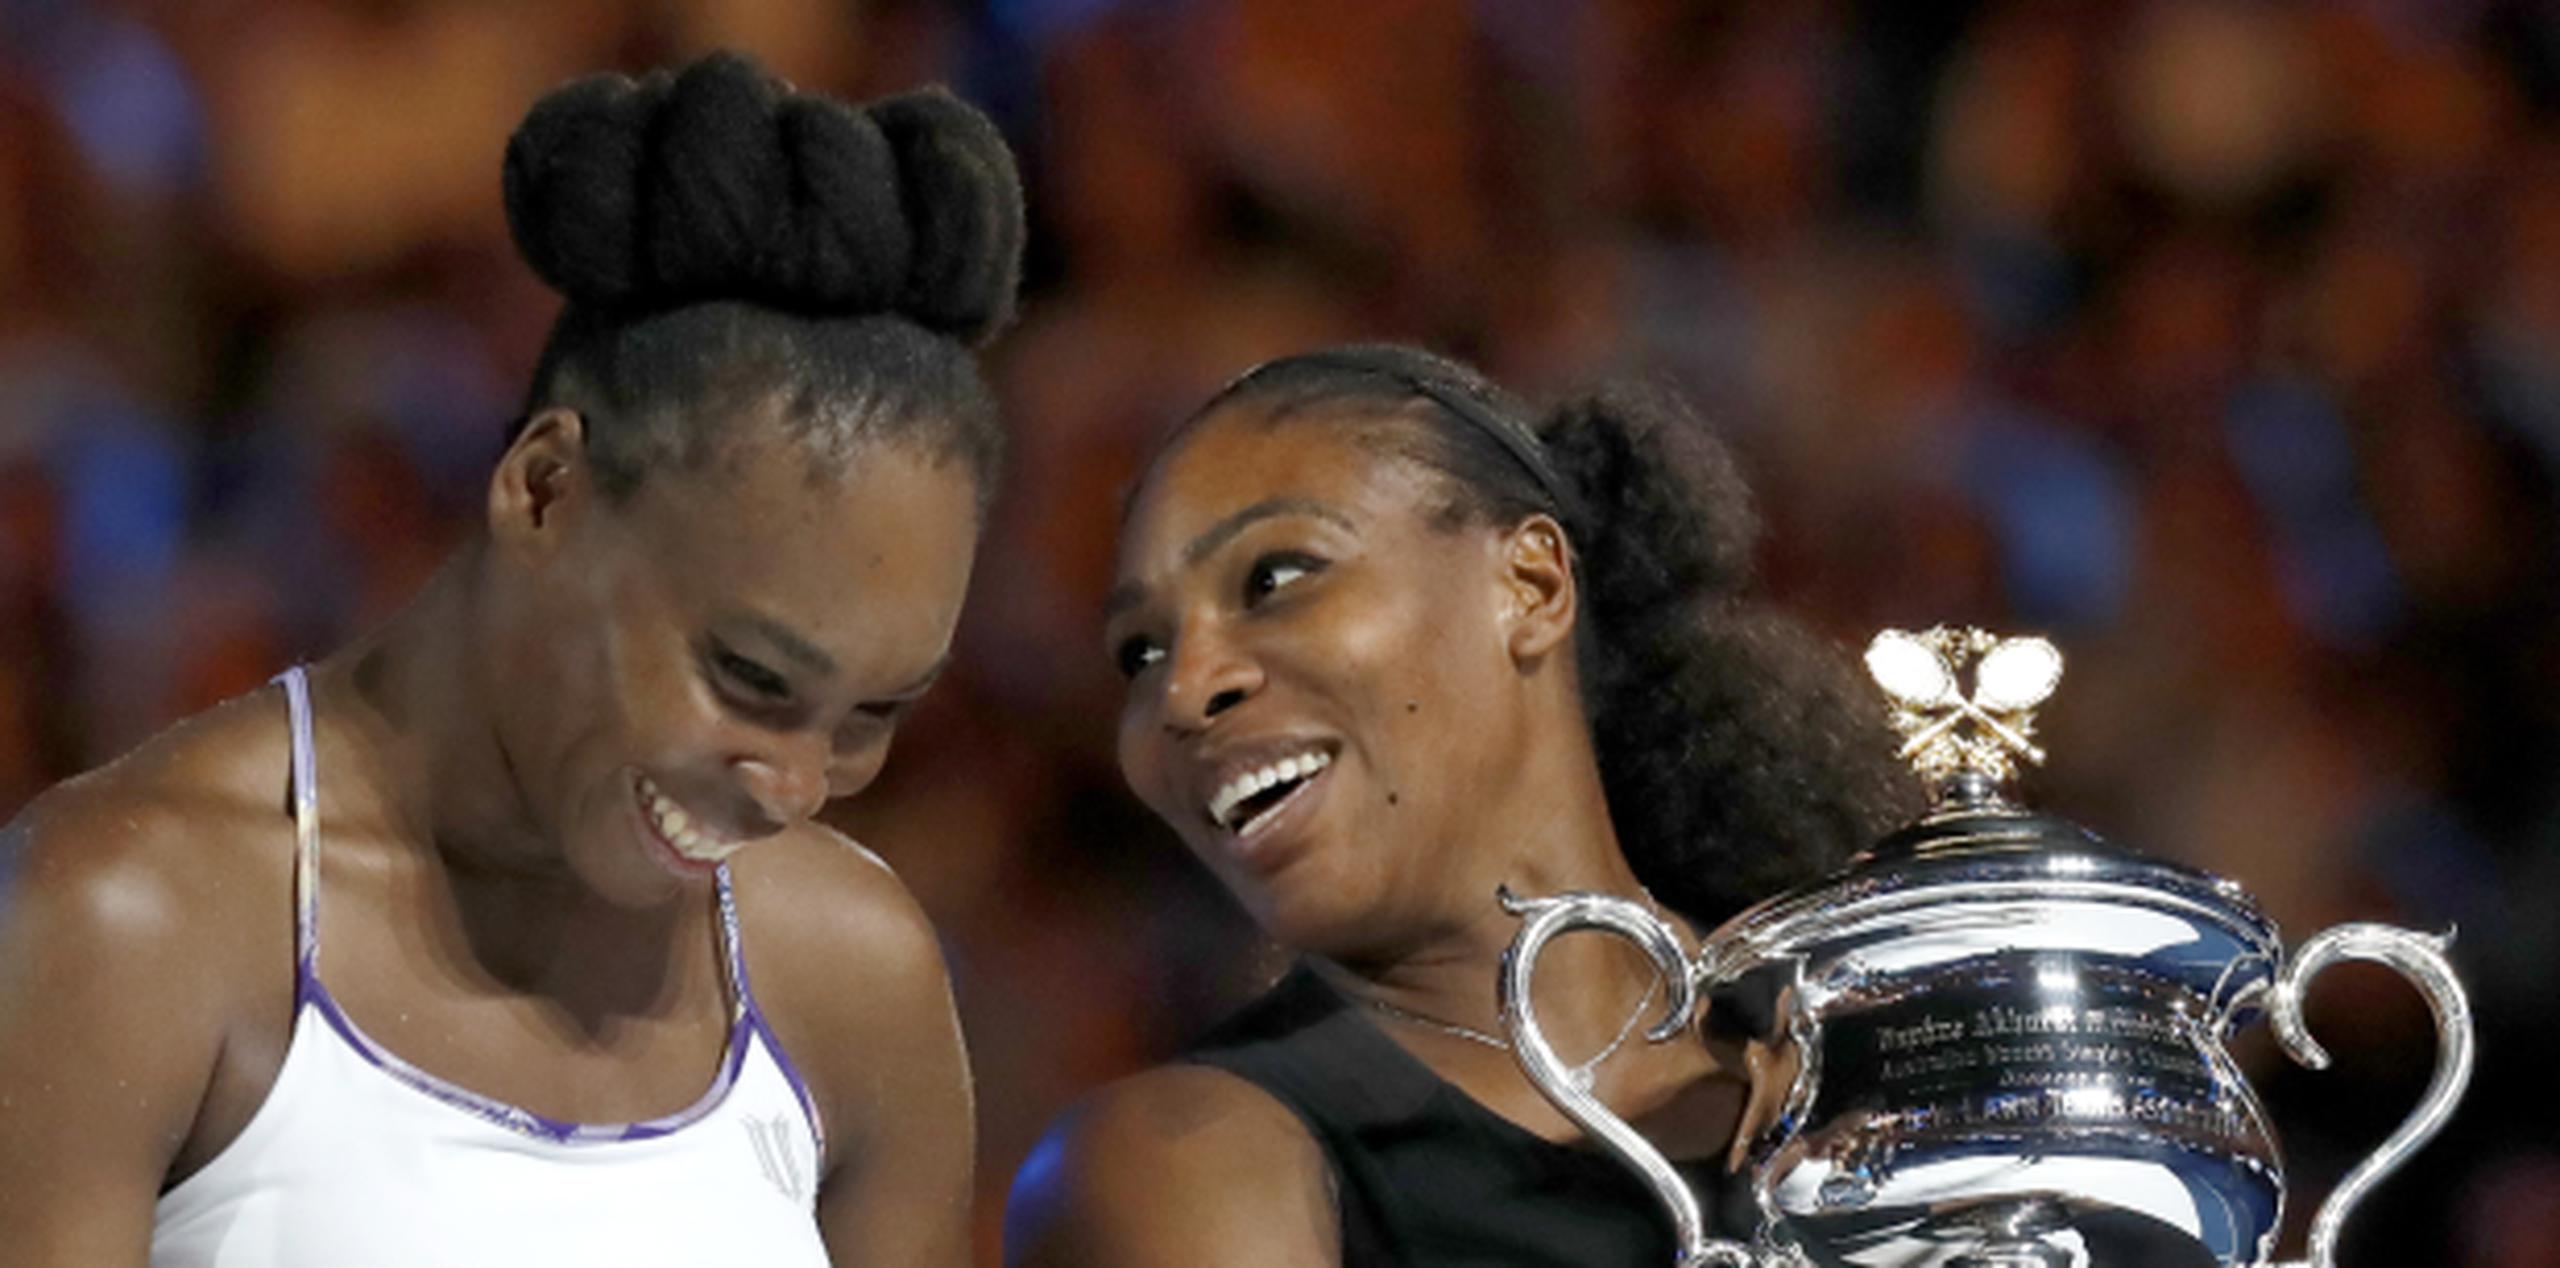 Fue la séptima victoria de Serena en nueve finales del Gran Slam contra su hermana, y la primera desde Wimbledon en 2009. (AP)